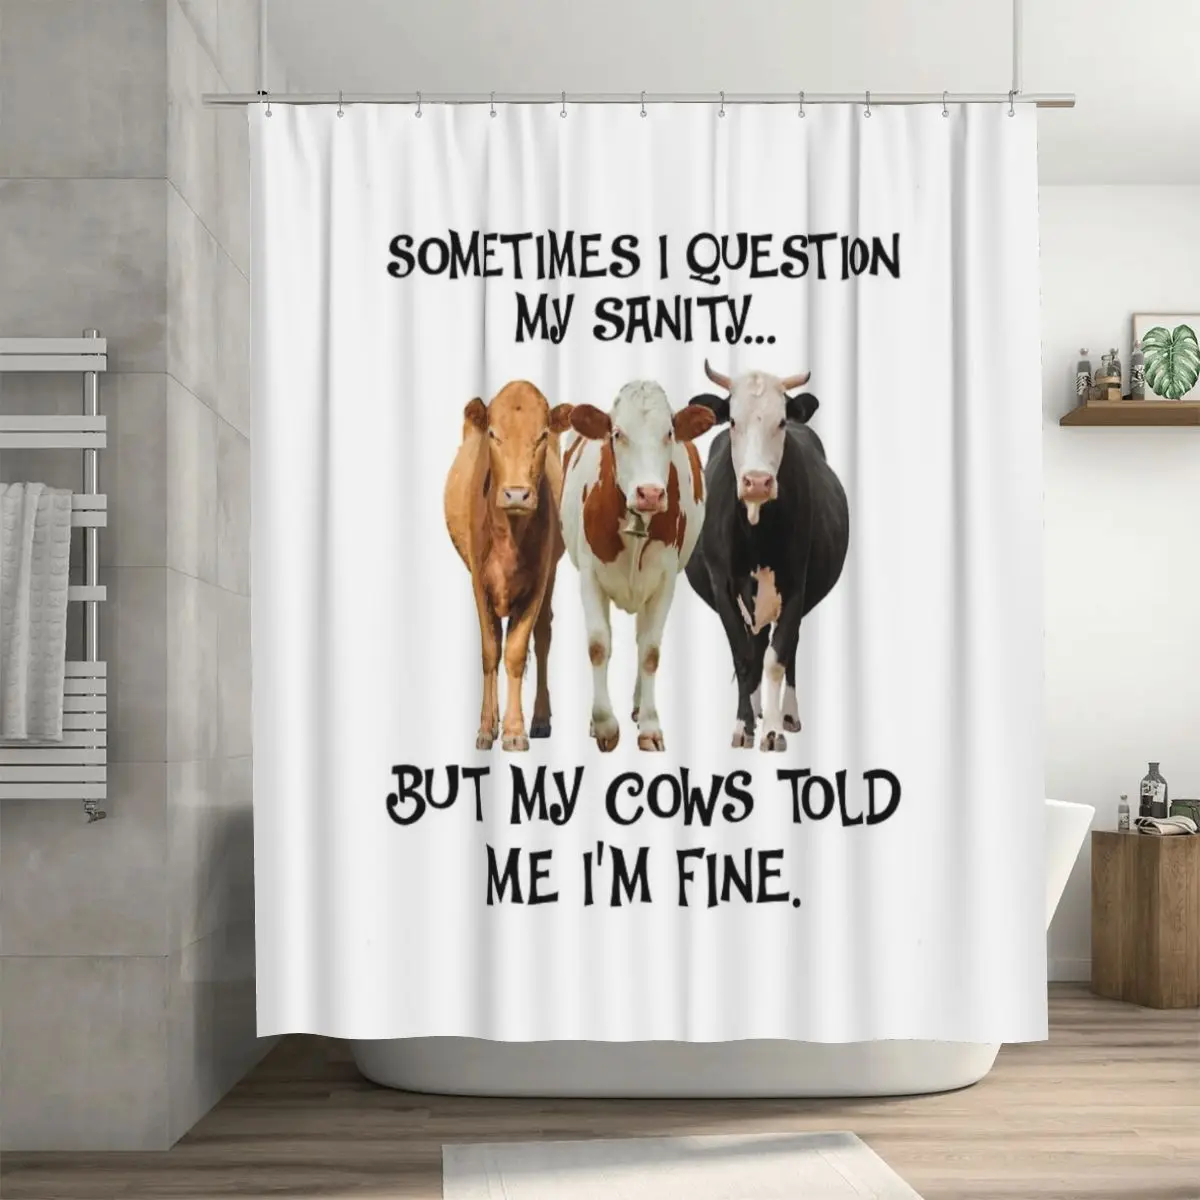 

Иногда я задаю вопрос о своей Санти, но мои коровы отметили мне, что душевая занавеска 72x72 дюйма с крючками, индивидуальный узор, подарок любимому